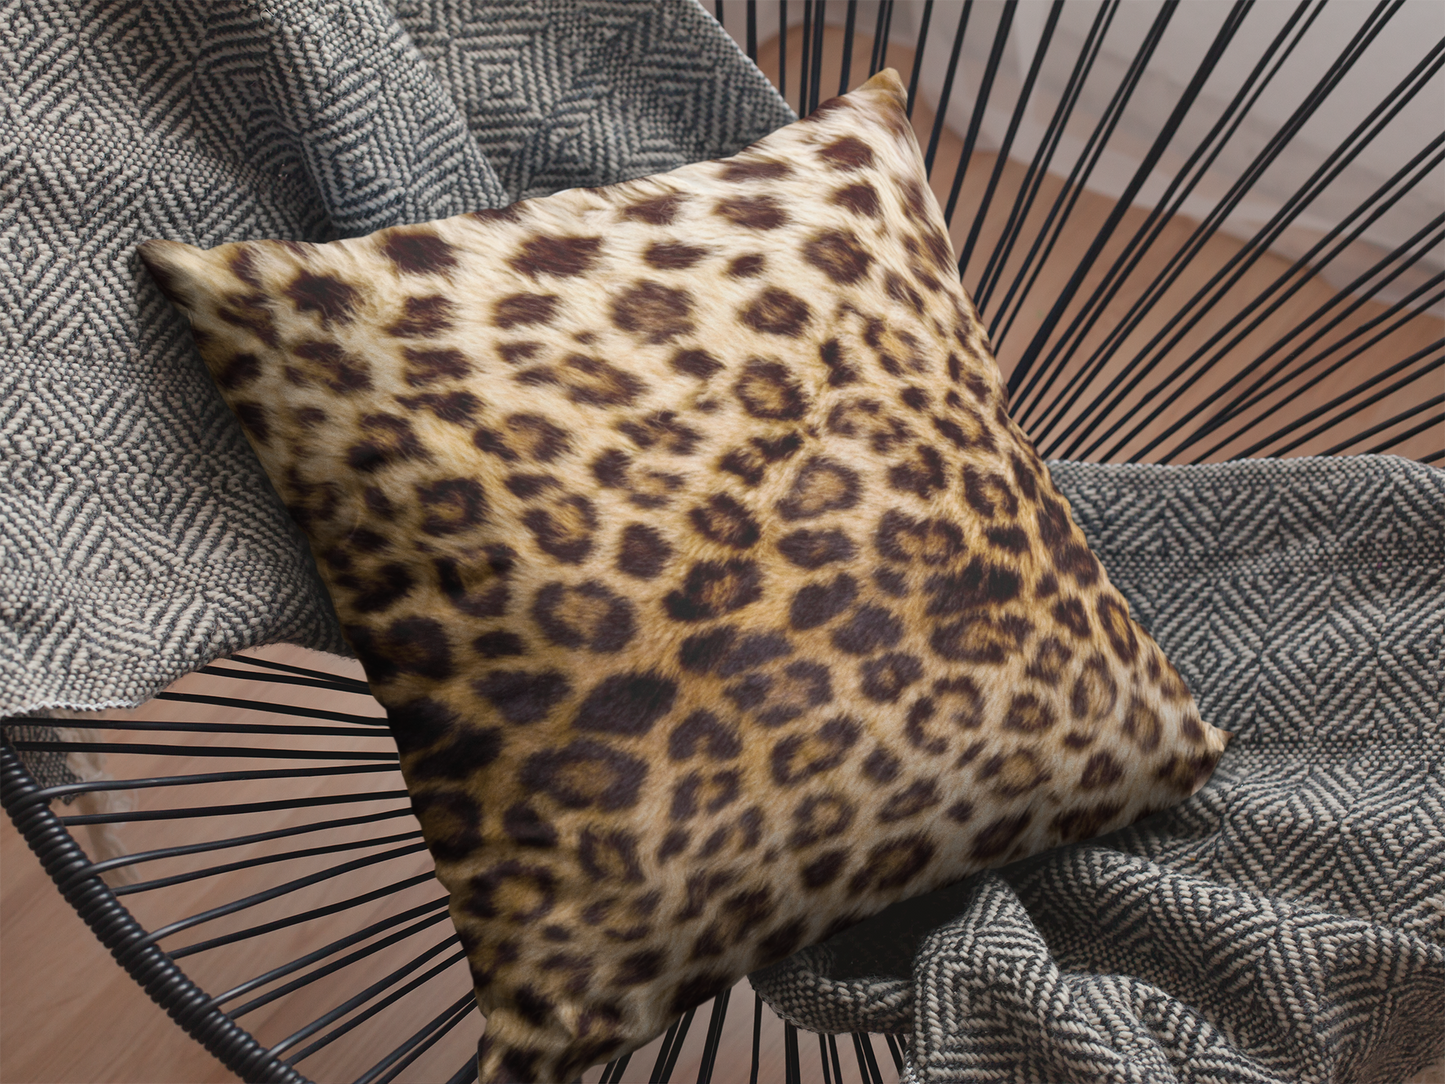 Leopard Print Pillow